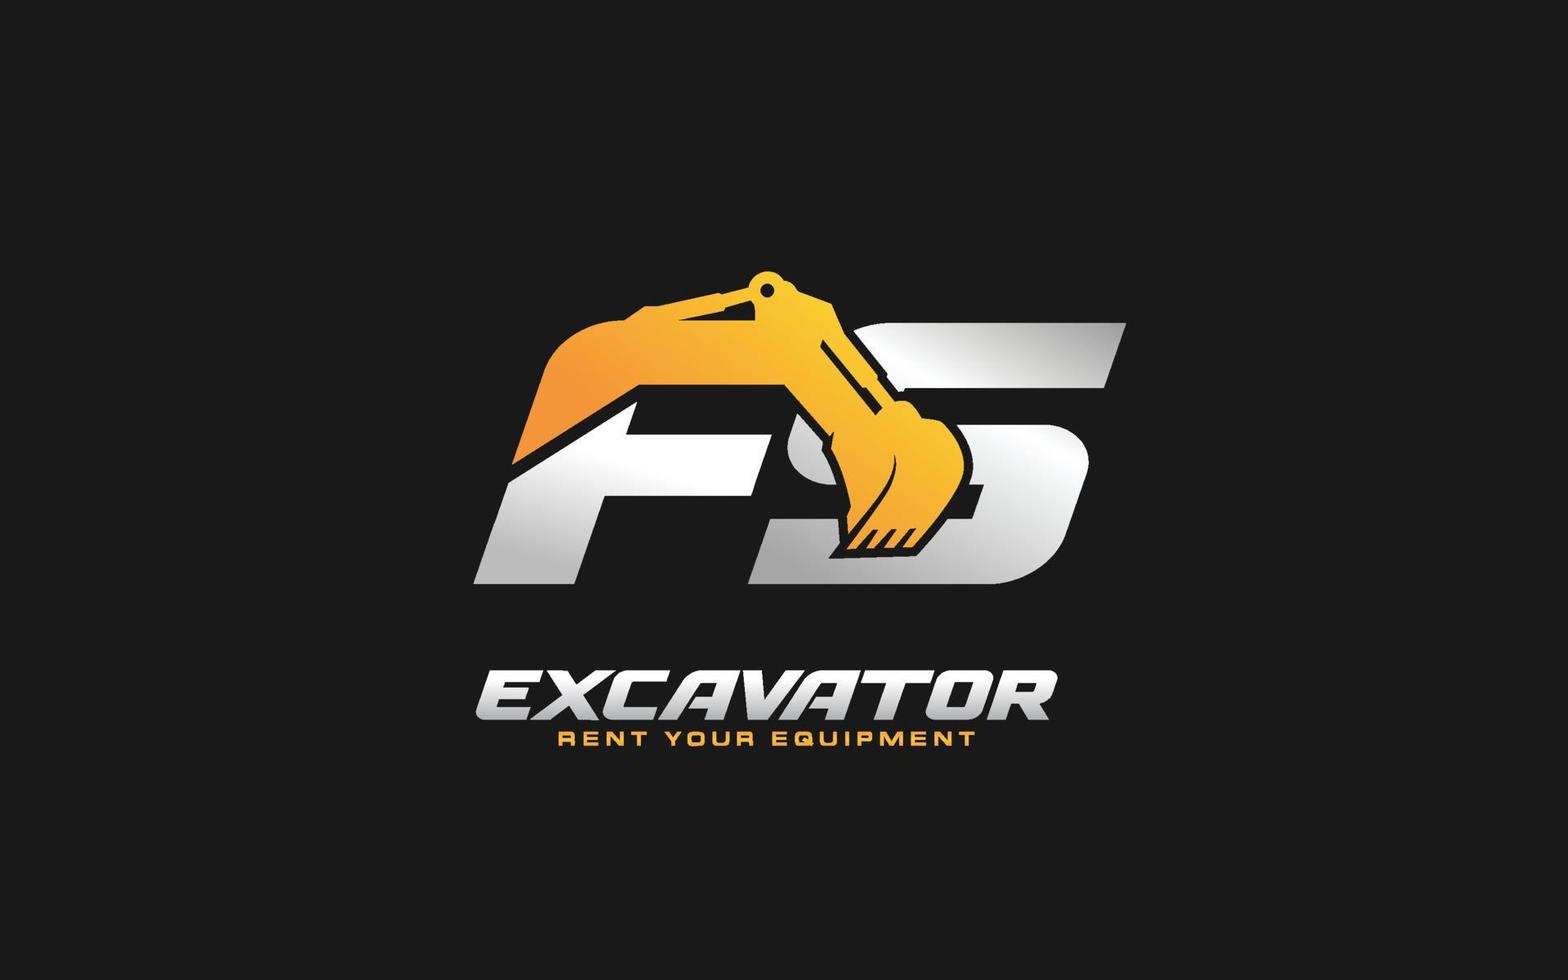 Excavadora fs logo para empresa constructora. ilustración de vector de plantilla de equipo pesado para su marca.